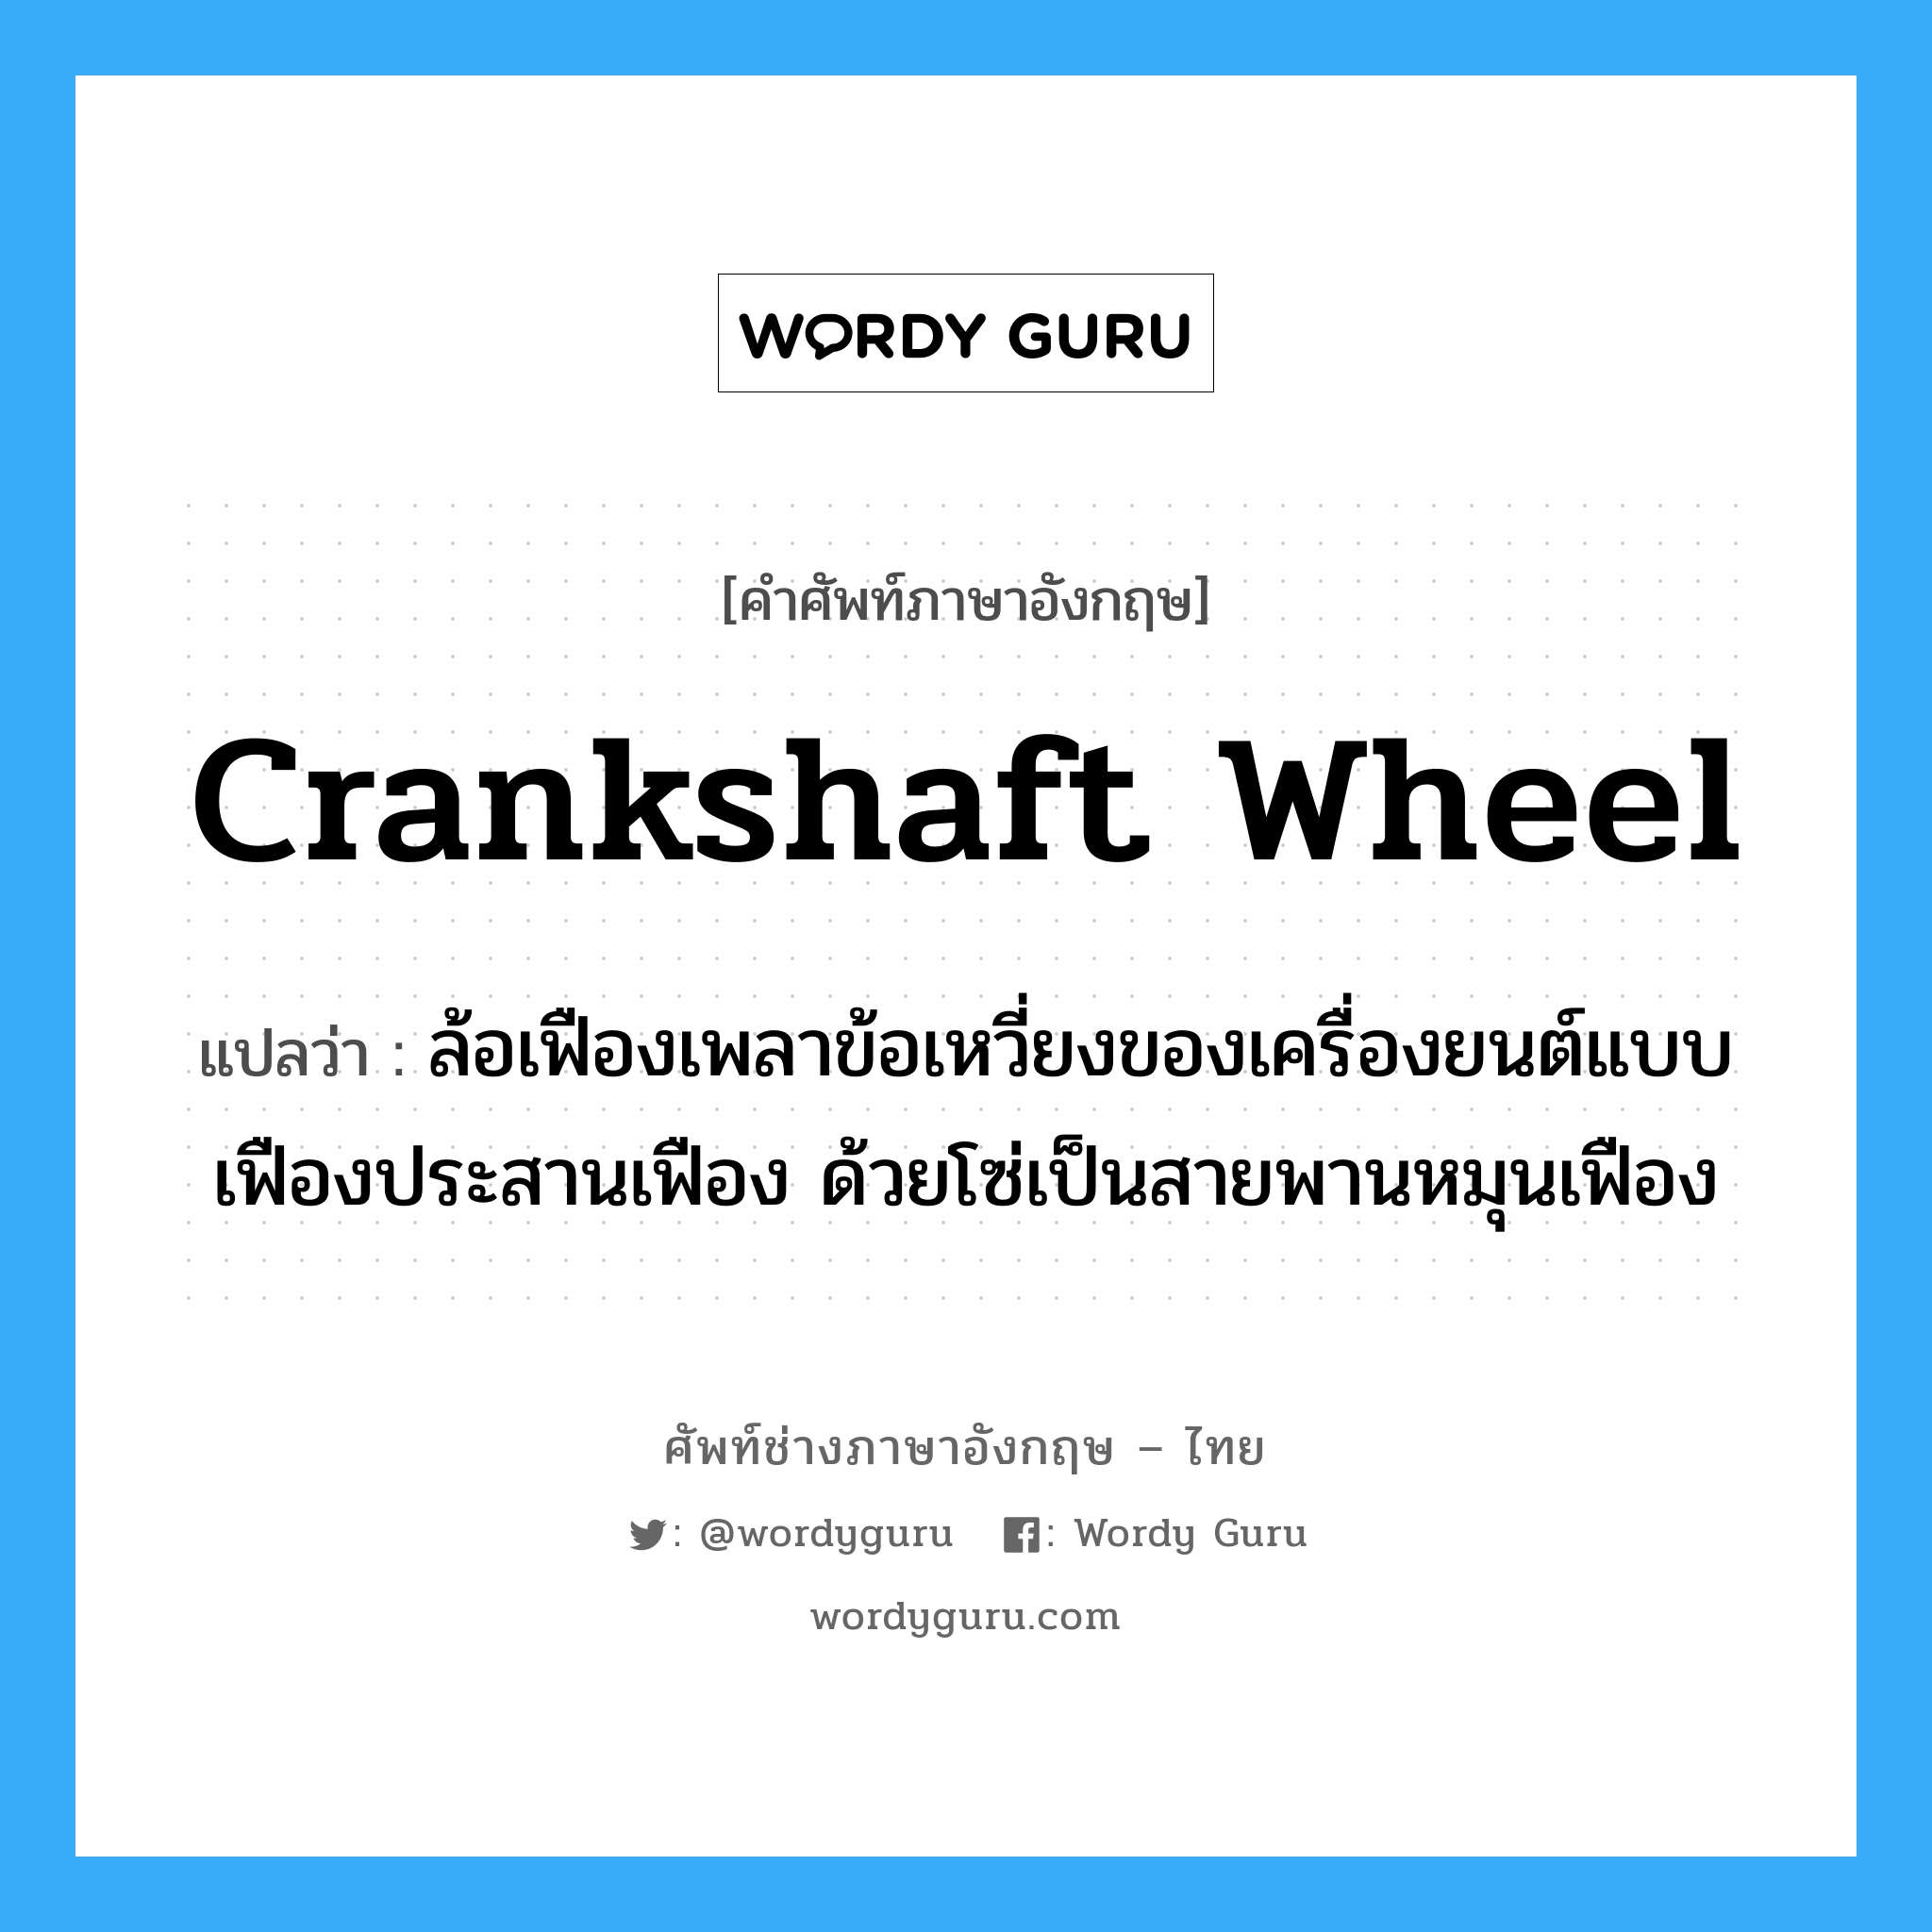 crankshaft wheel แปลว่า?, คำศัพท์ช่างภาษาอังกฤษ - ไทย crankshaft wheel คำศัพท์ภาษาอังกฤษ crankshaft wheel แปลว่า ล้อเฟืองเพลาข้อเหวี่ยงของเครื่องยนต์แบบเฟืองประสานเฟือง ด้วยโซ่เป็นสายพานหมุนเฟือง